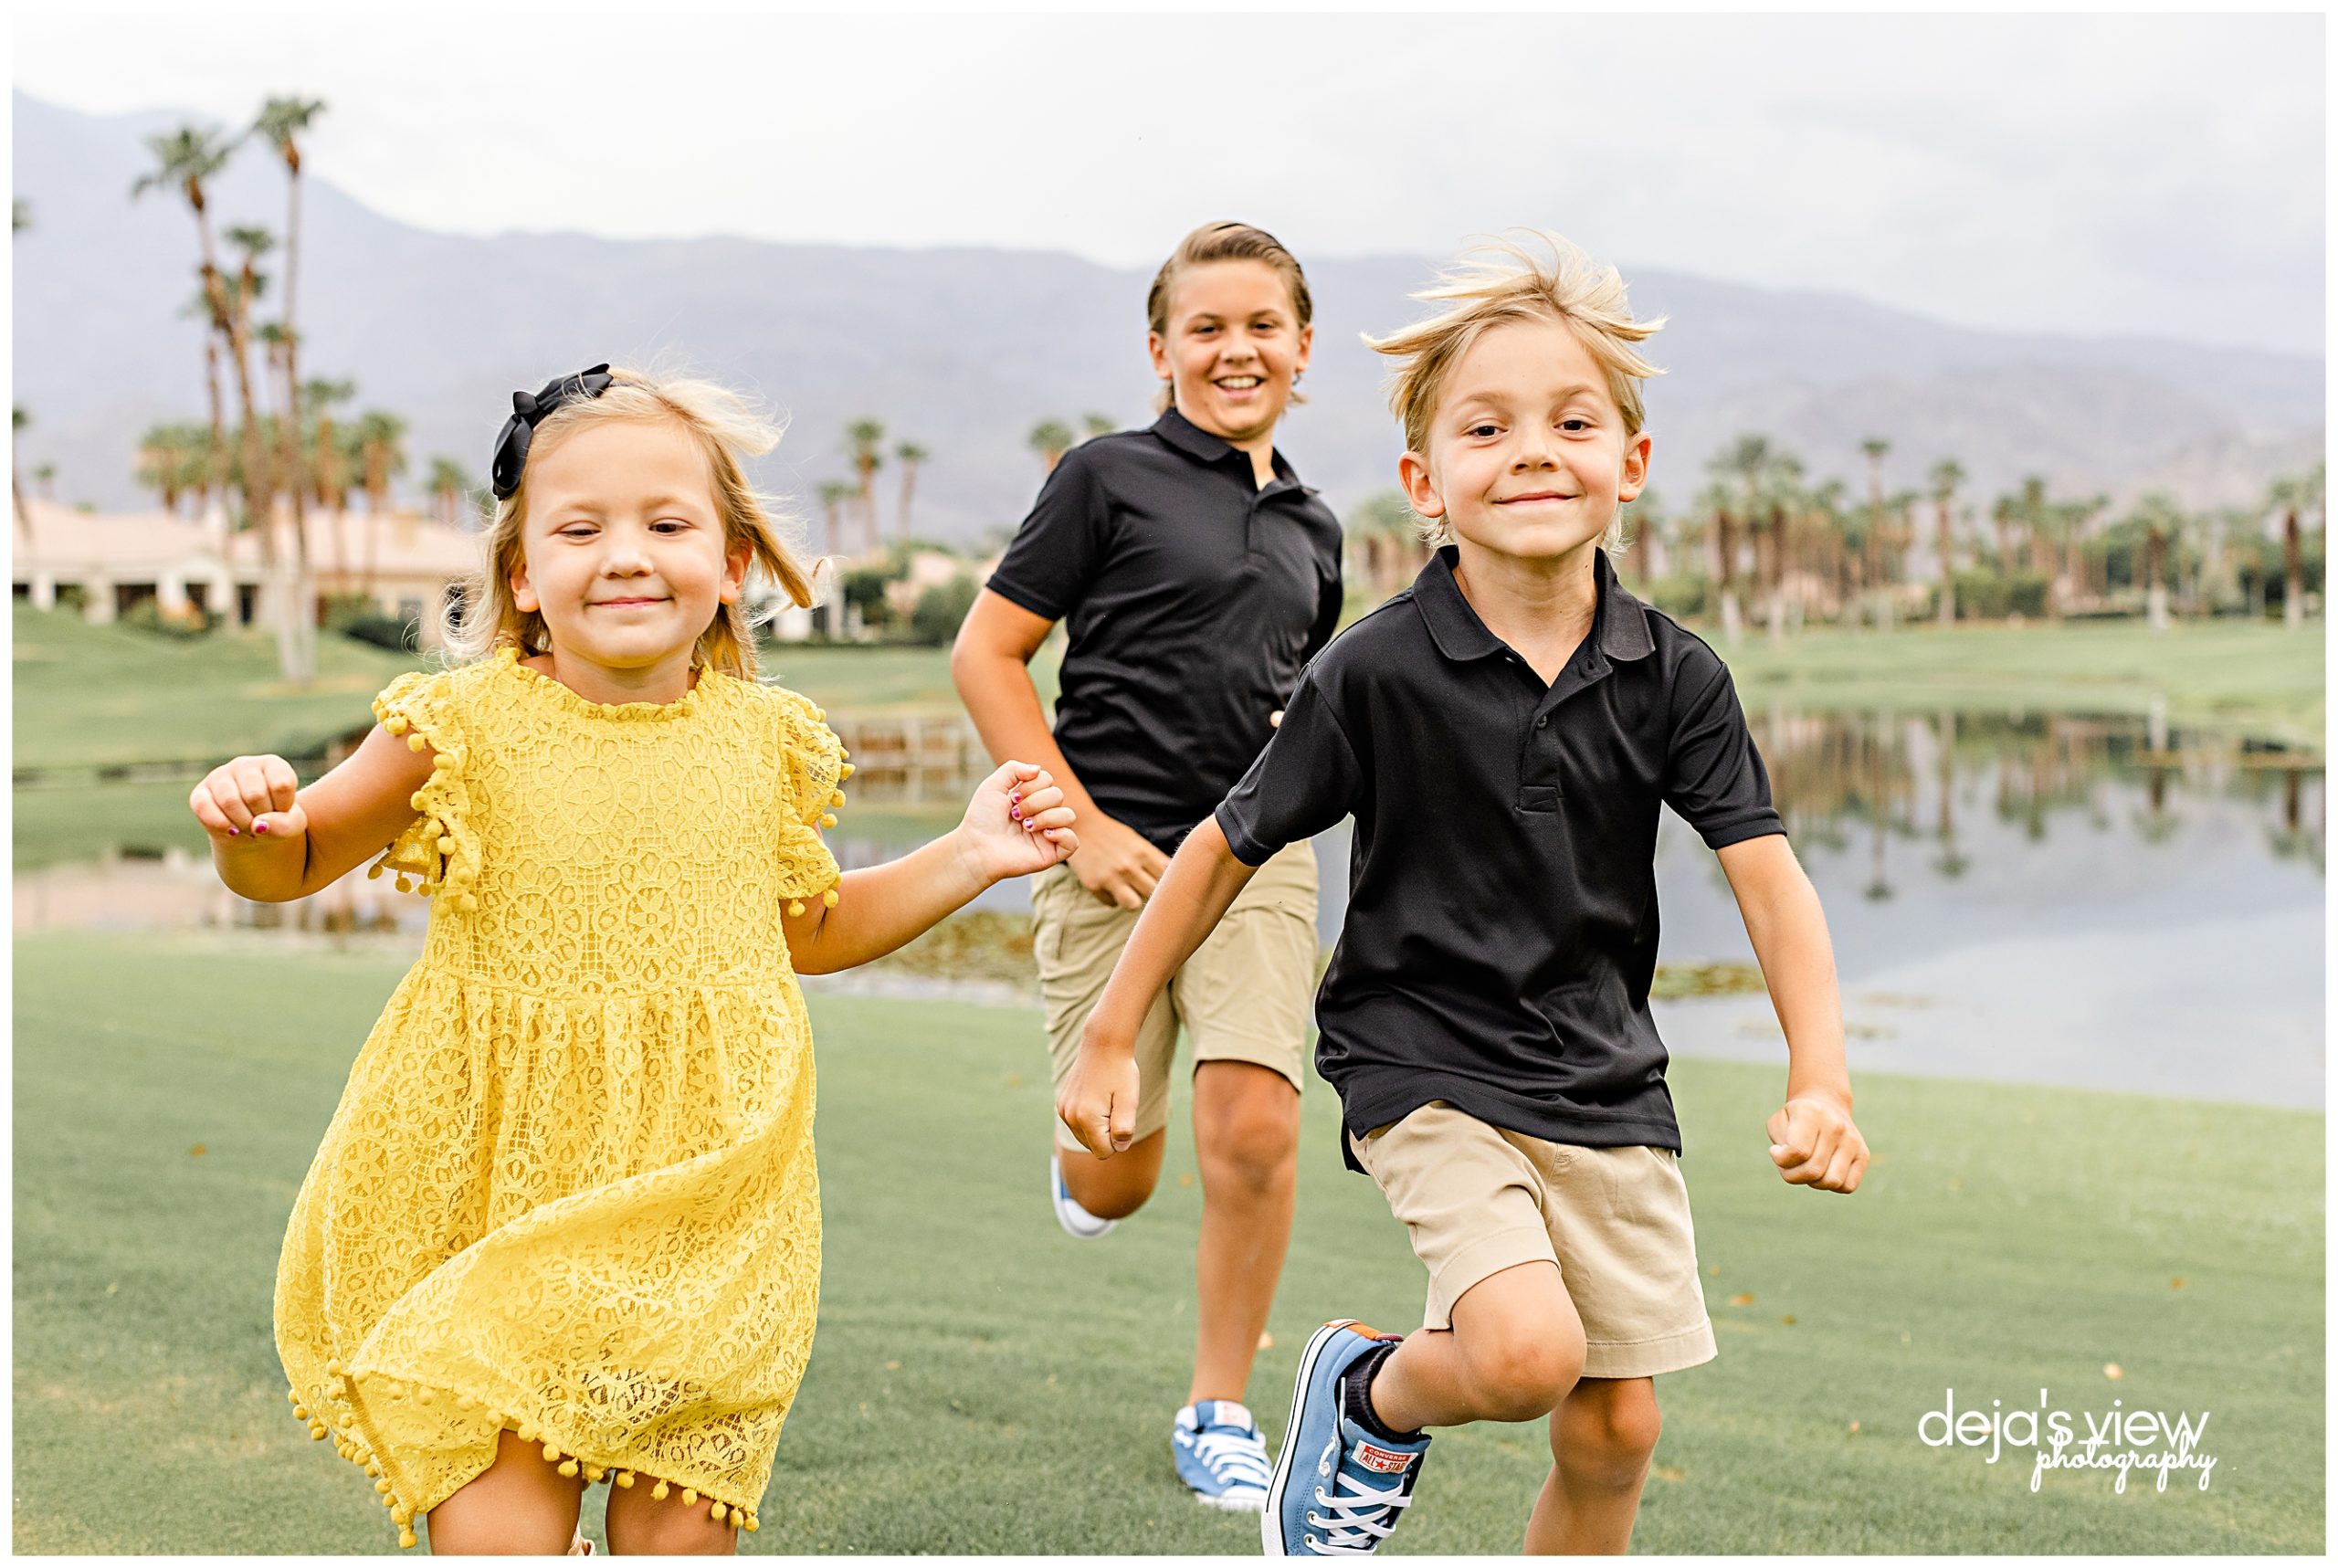 kids running during photoshoot